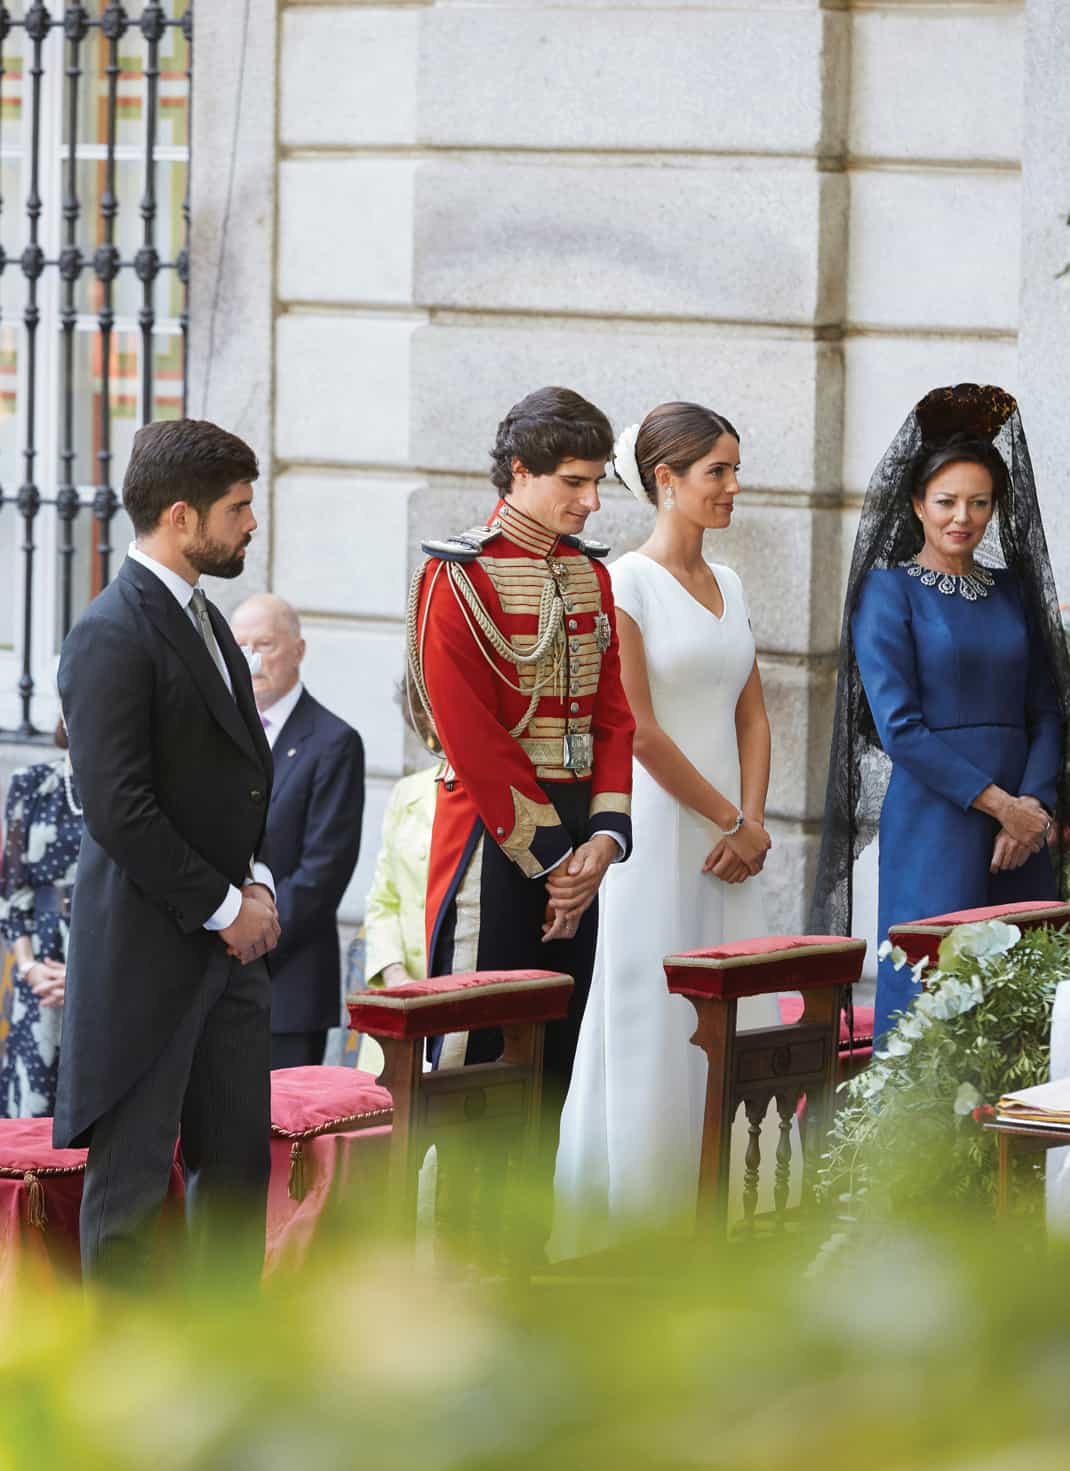 Imagen de la boda de Fernando Fitz James y Sofía Palazuelo (EFE)